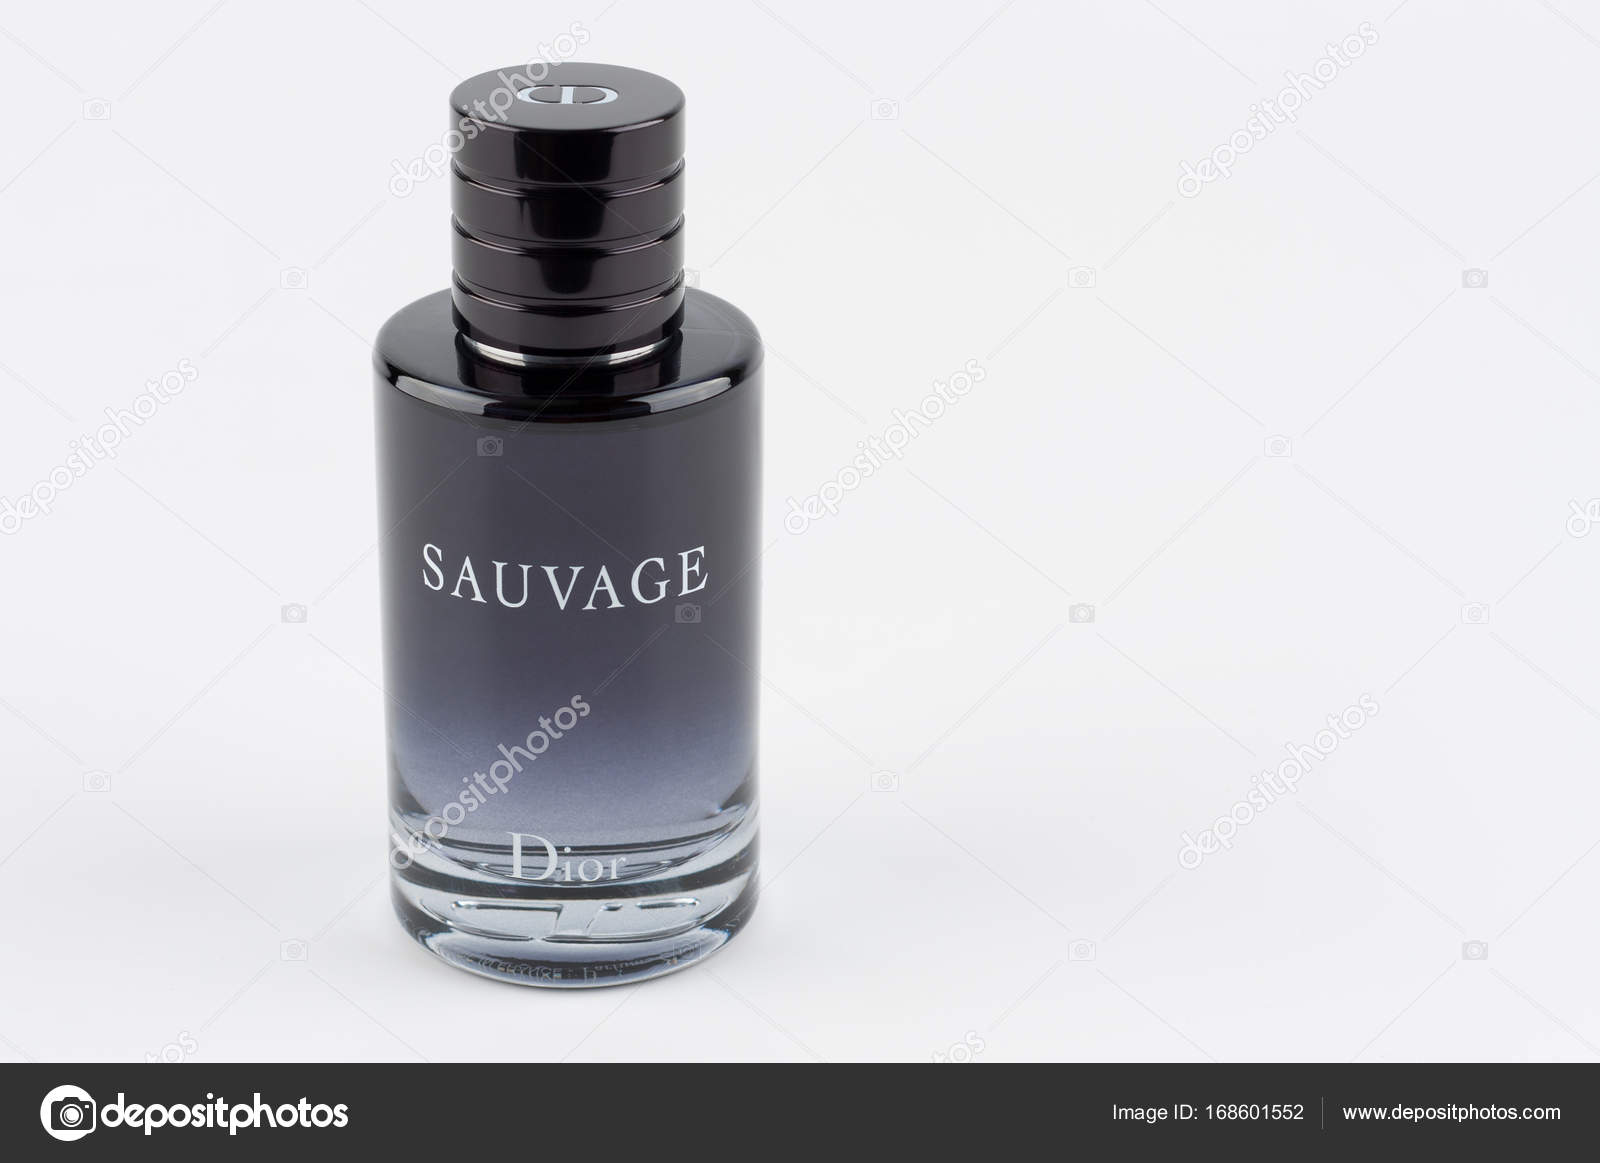 dior sauvage bottle